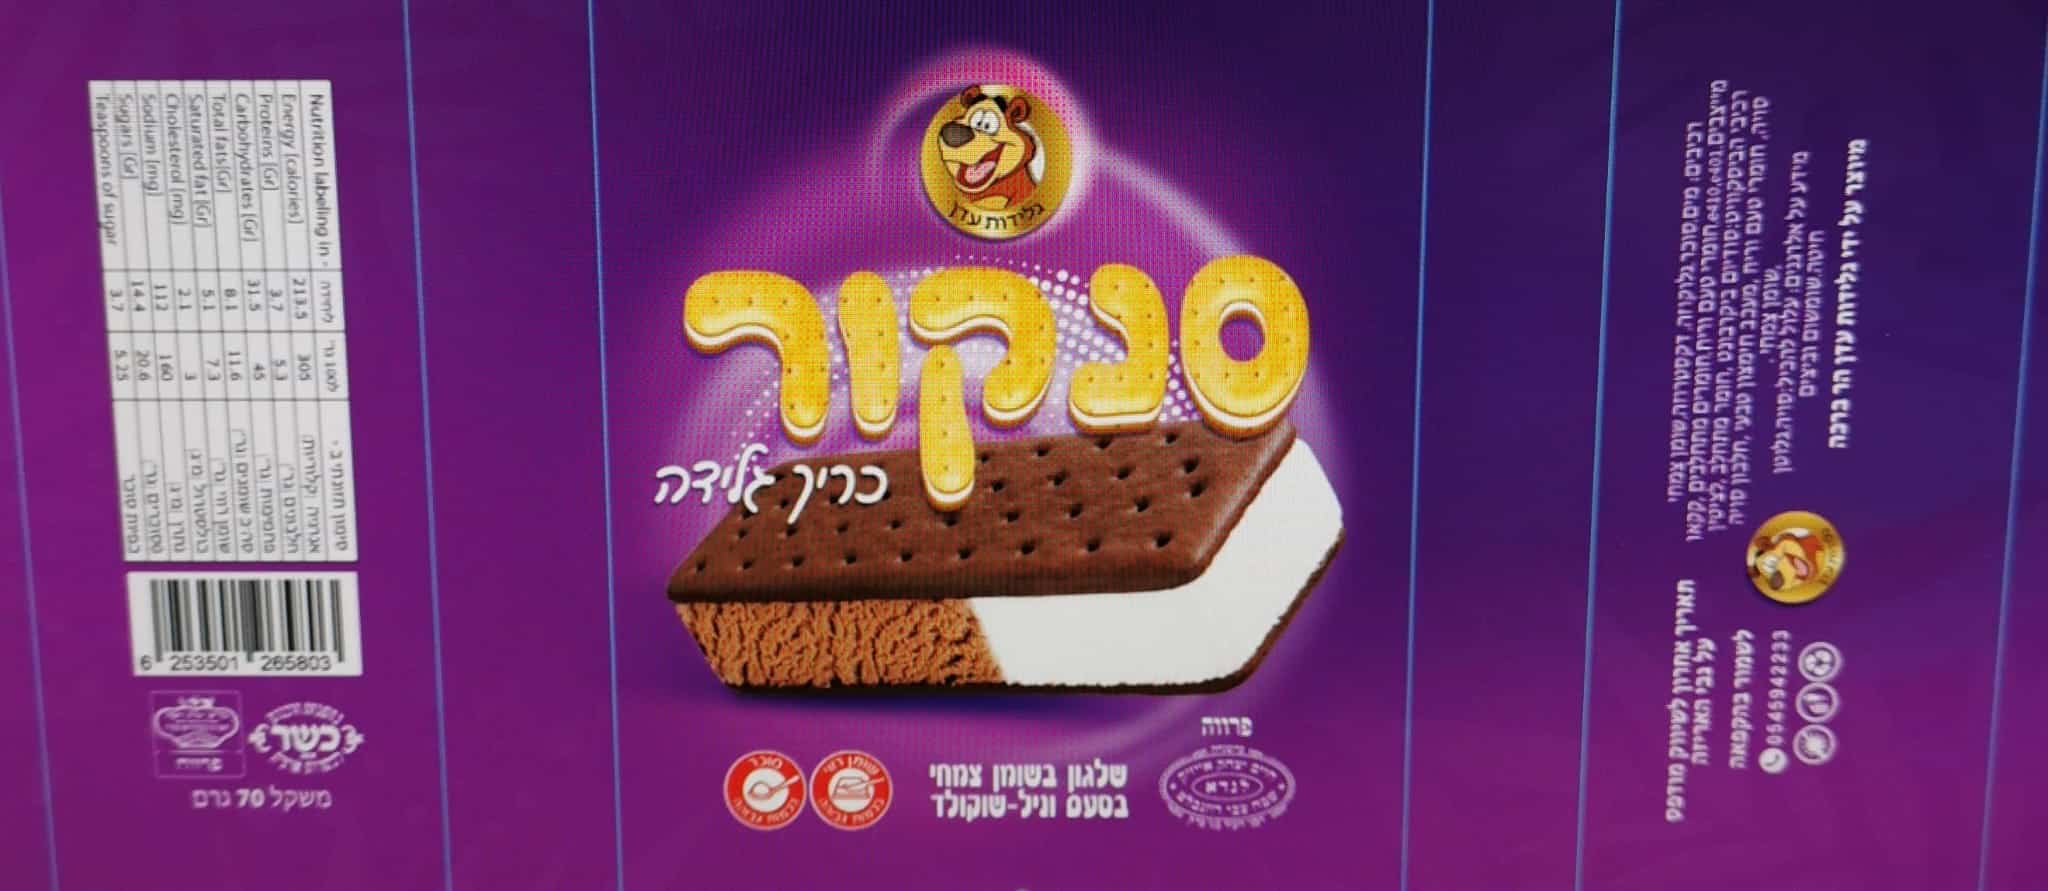 גלידות ללא אישור משווקות בישראל